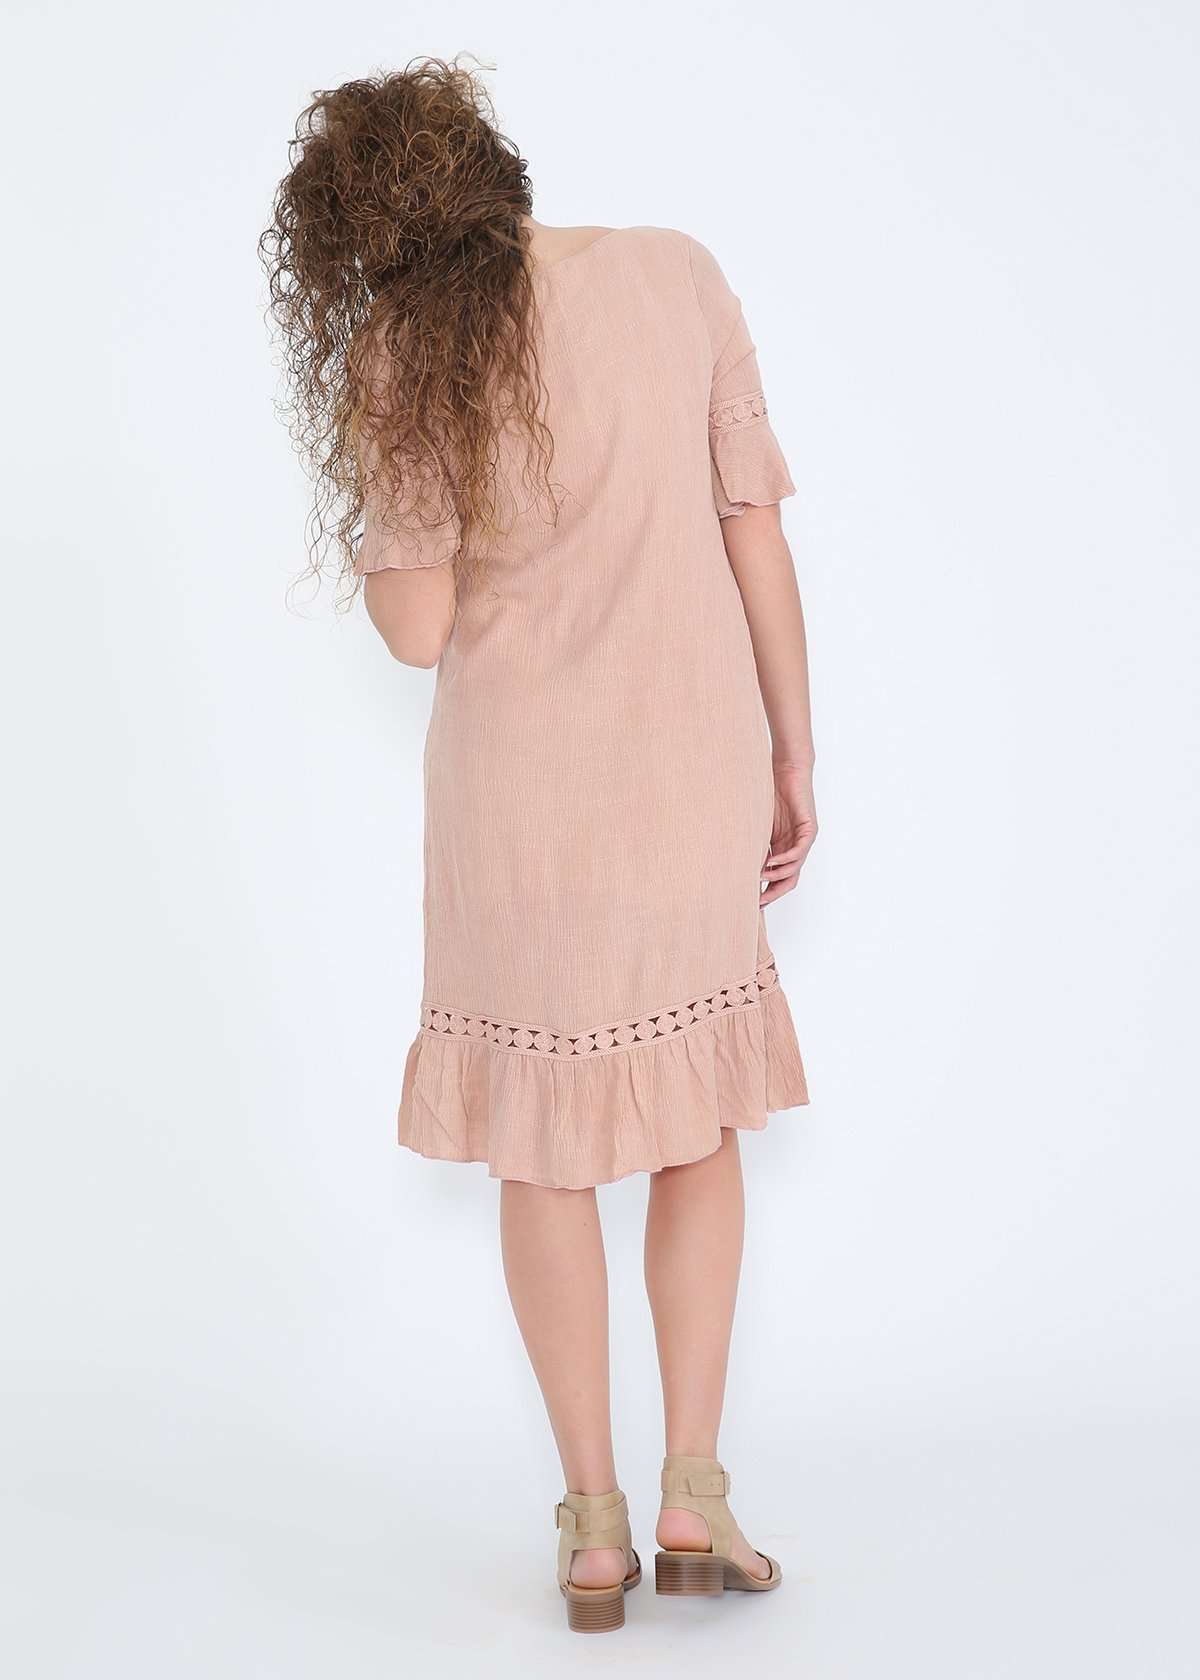 Blush crochet and ruffle detail midi dress